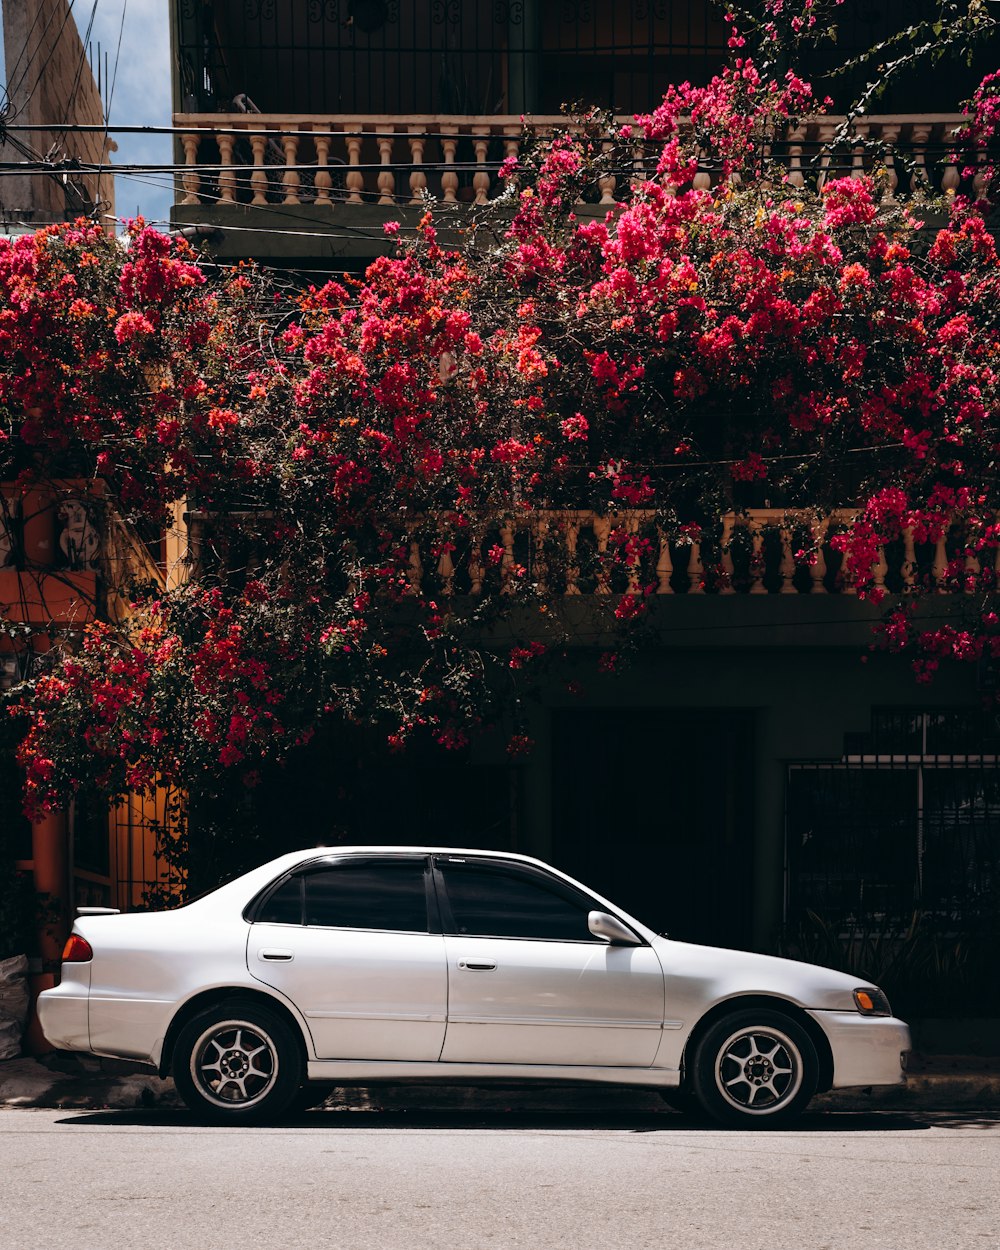 Weiße Limousine neben rotem Blattbaum geparkt